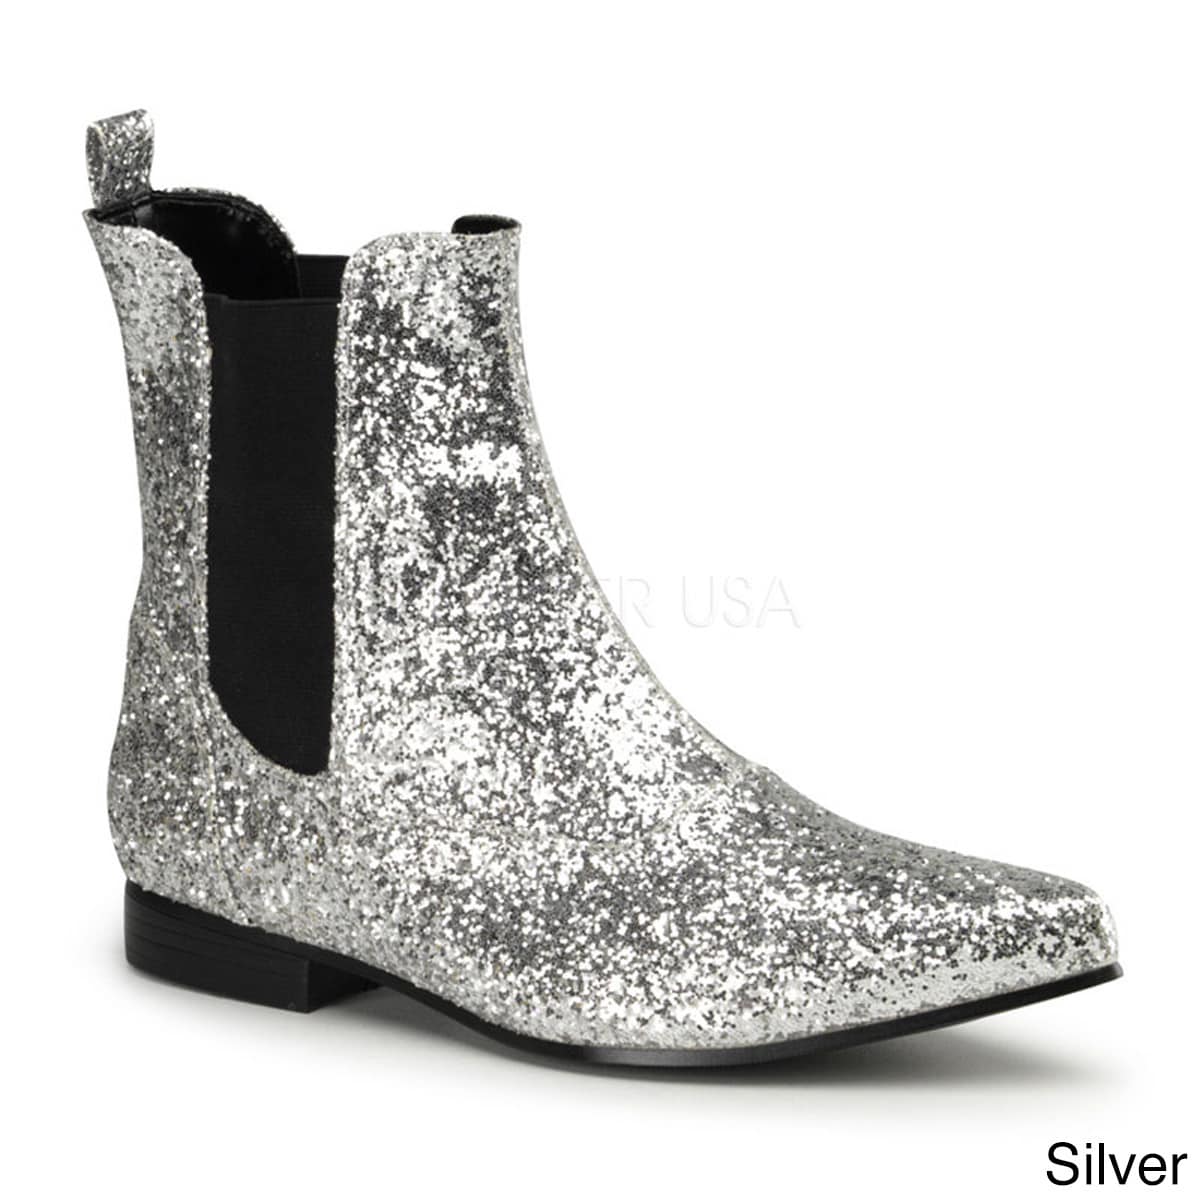 black boots 1 inch heel